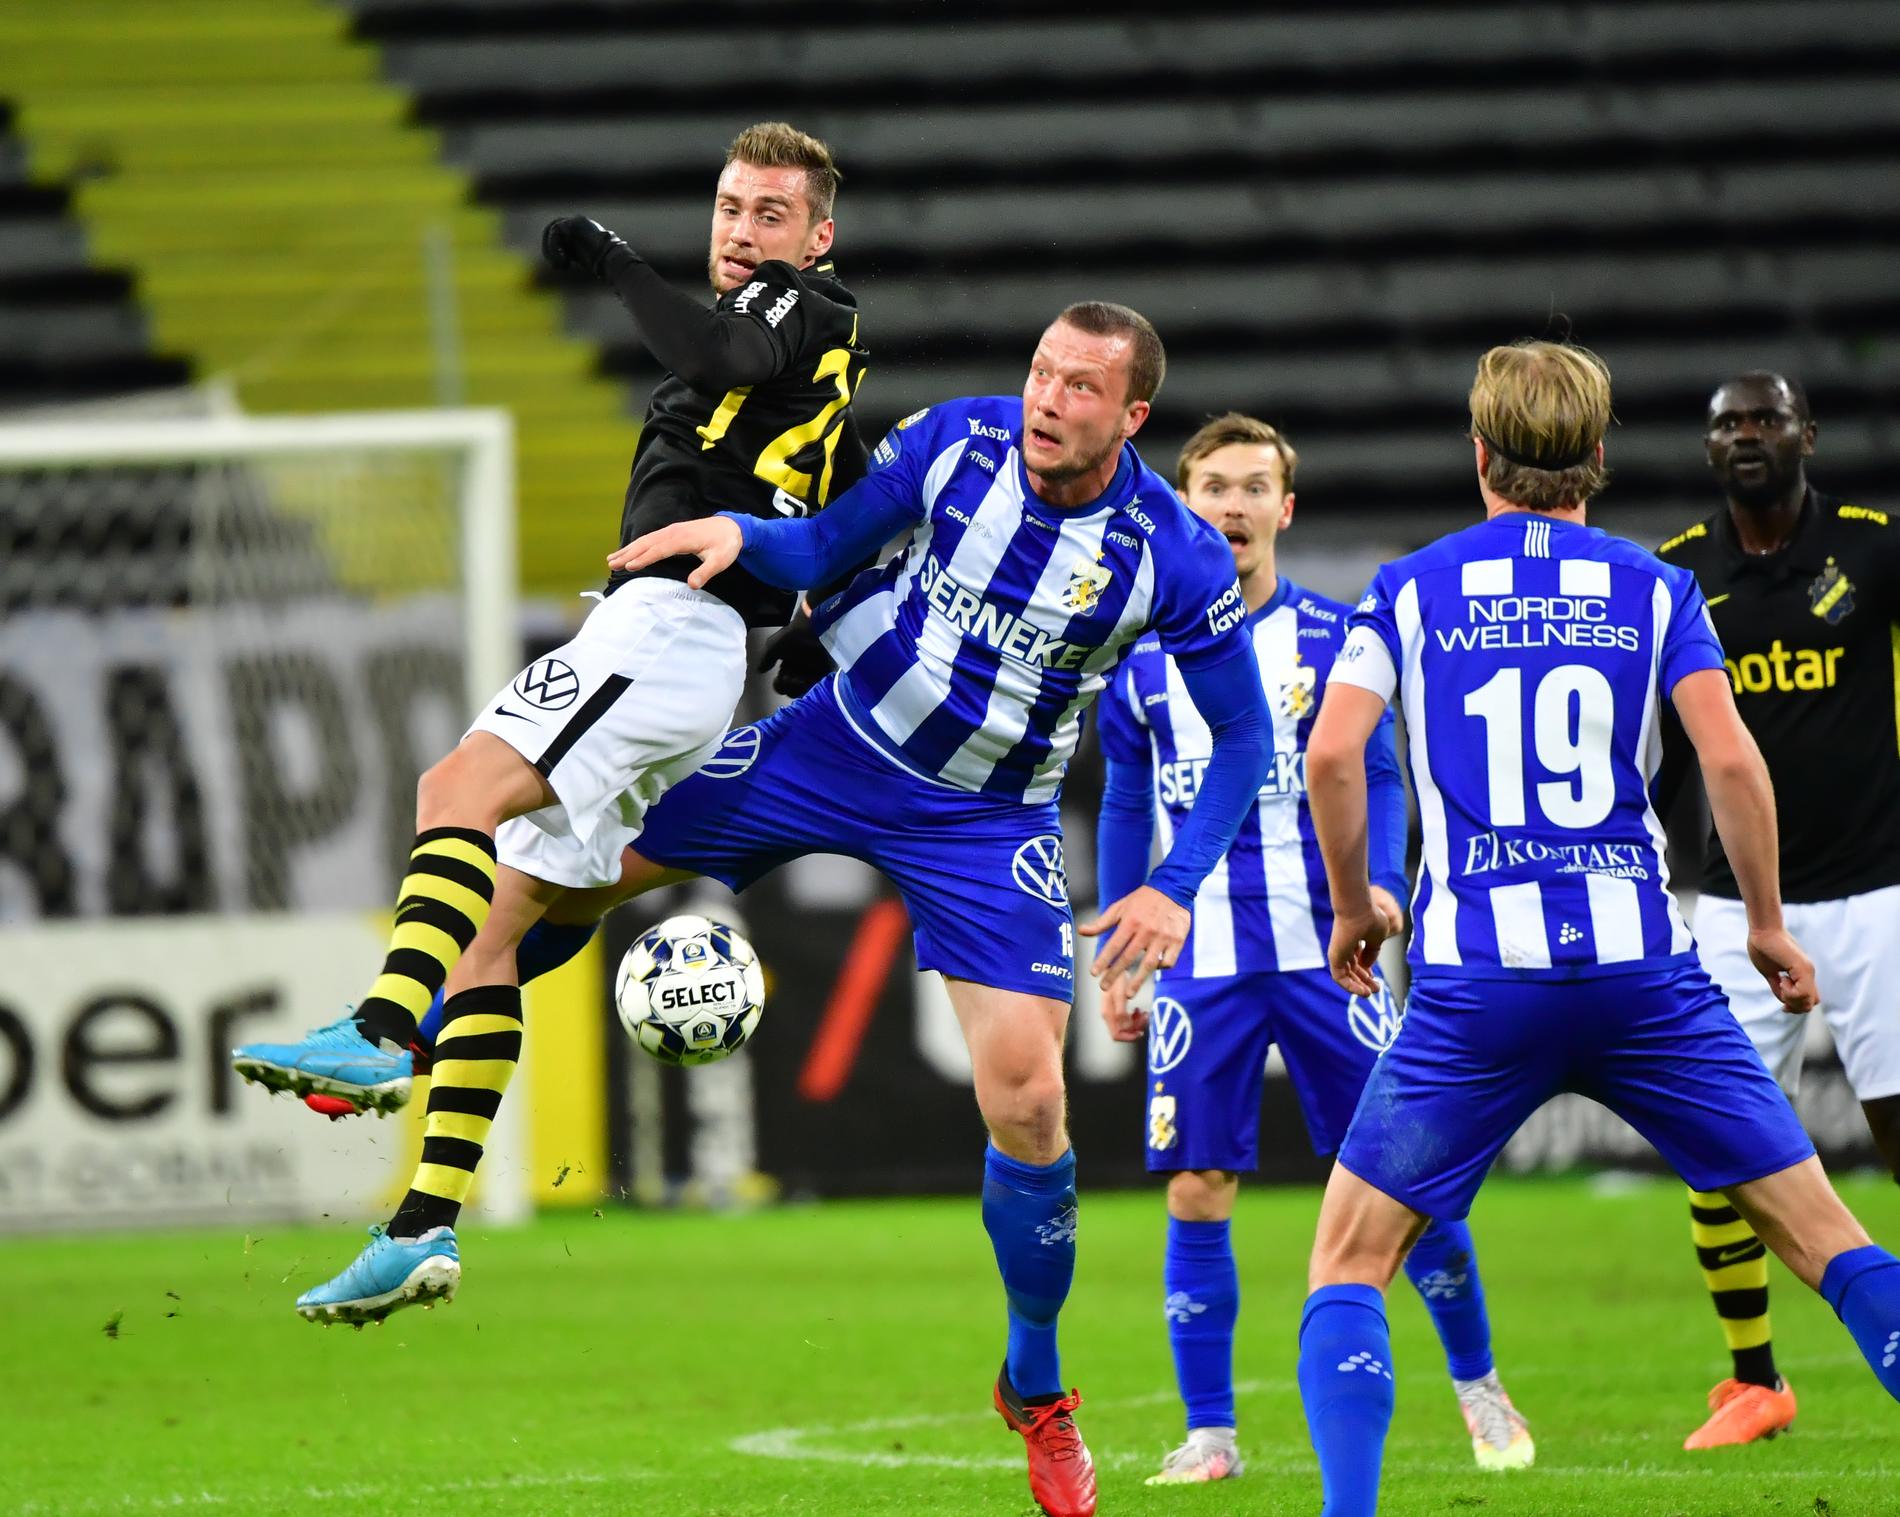 AIK:s Filip Rogic och IFK Göteborgs Jakob Johansson.